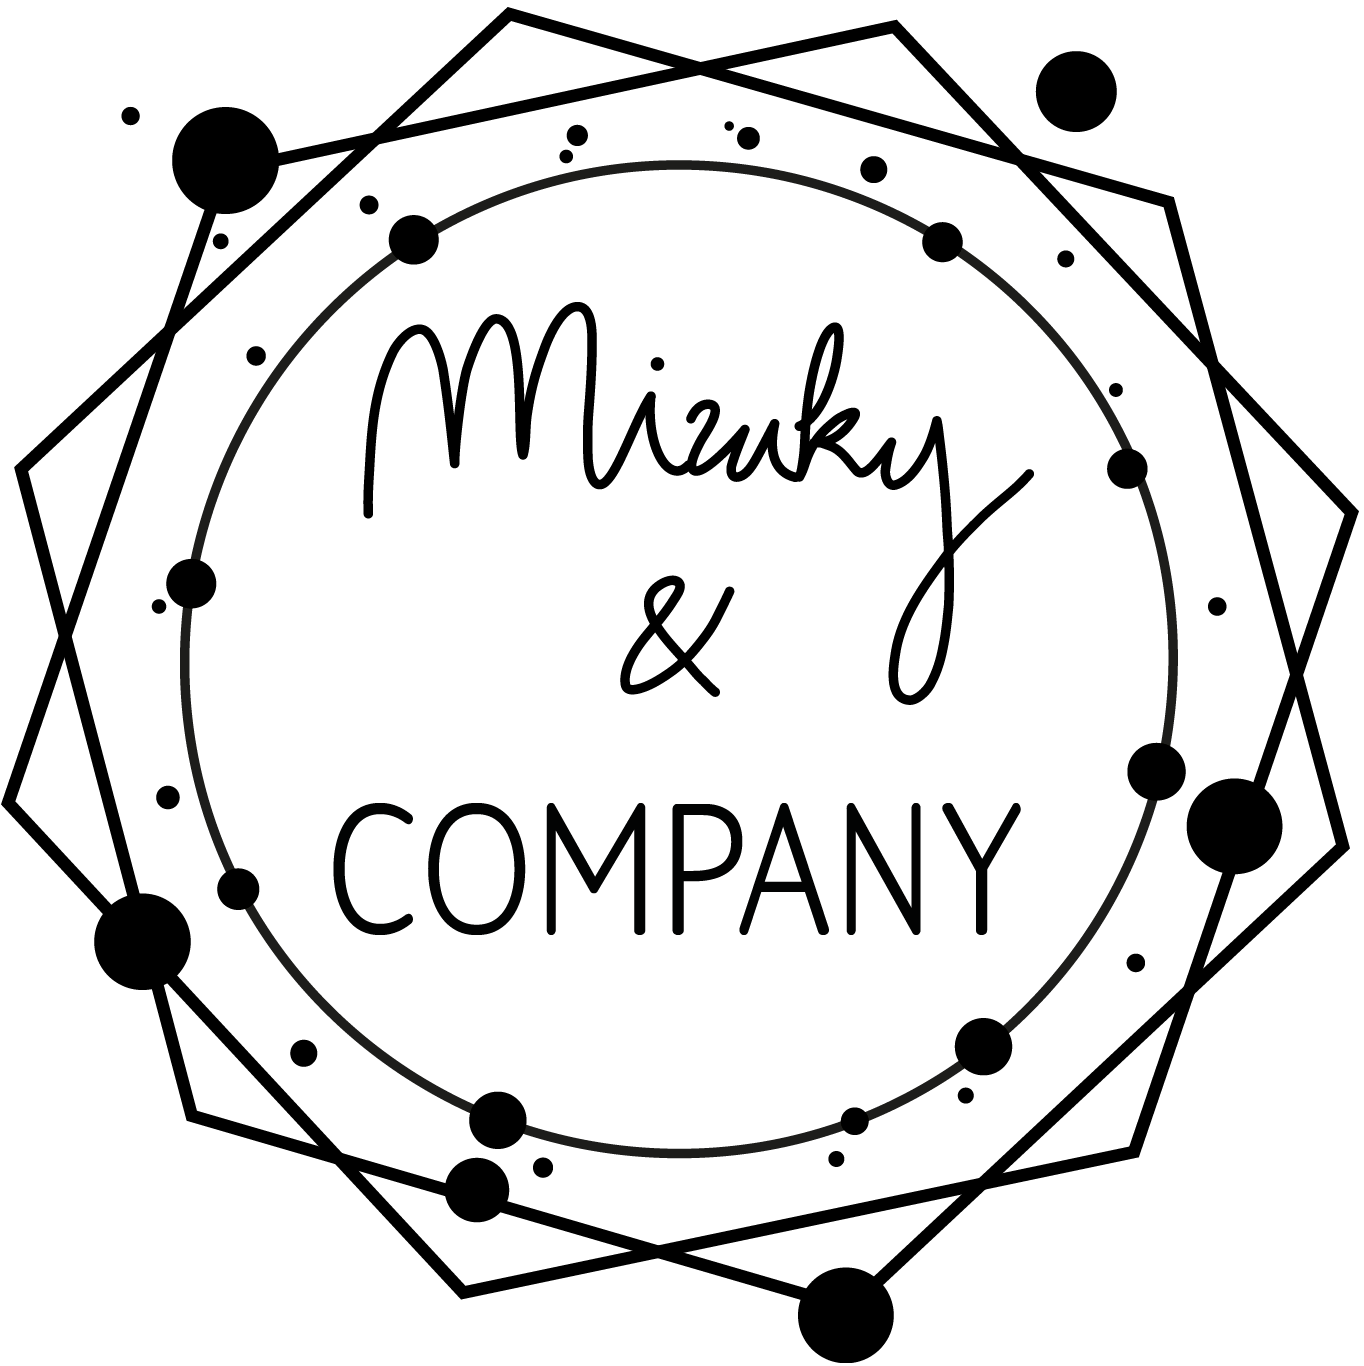 Mizuky & COMPANY